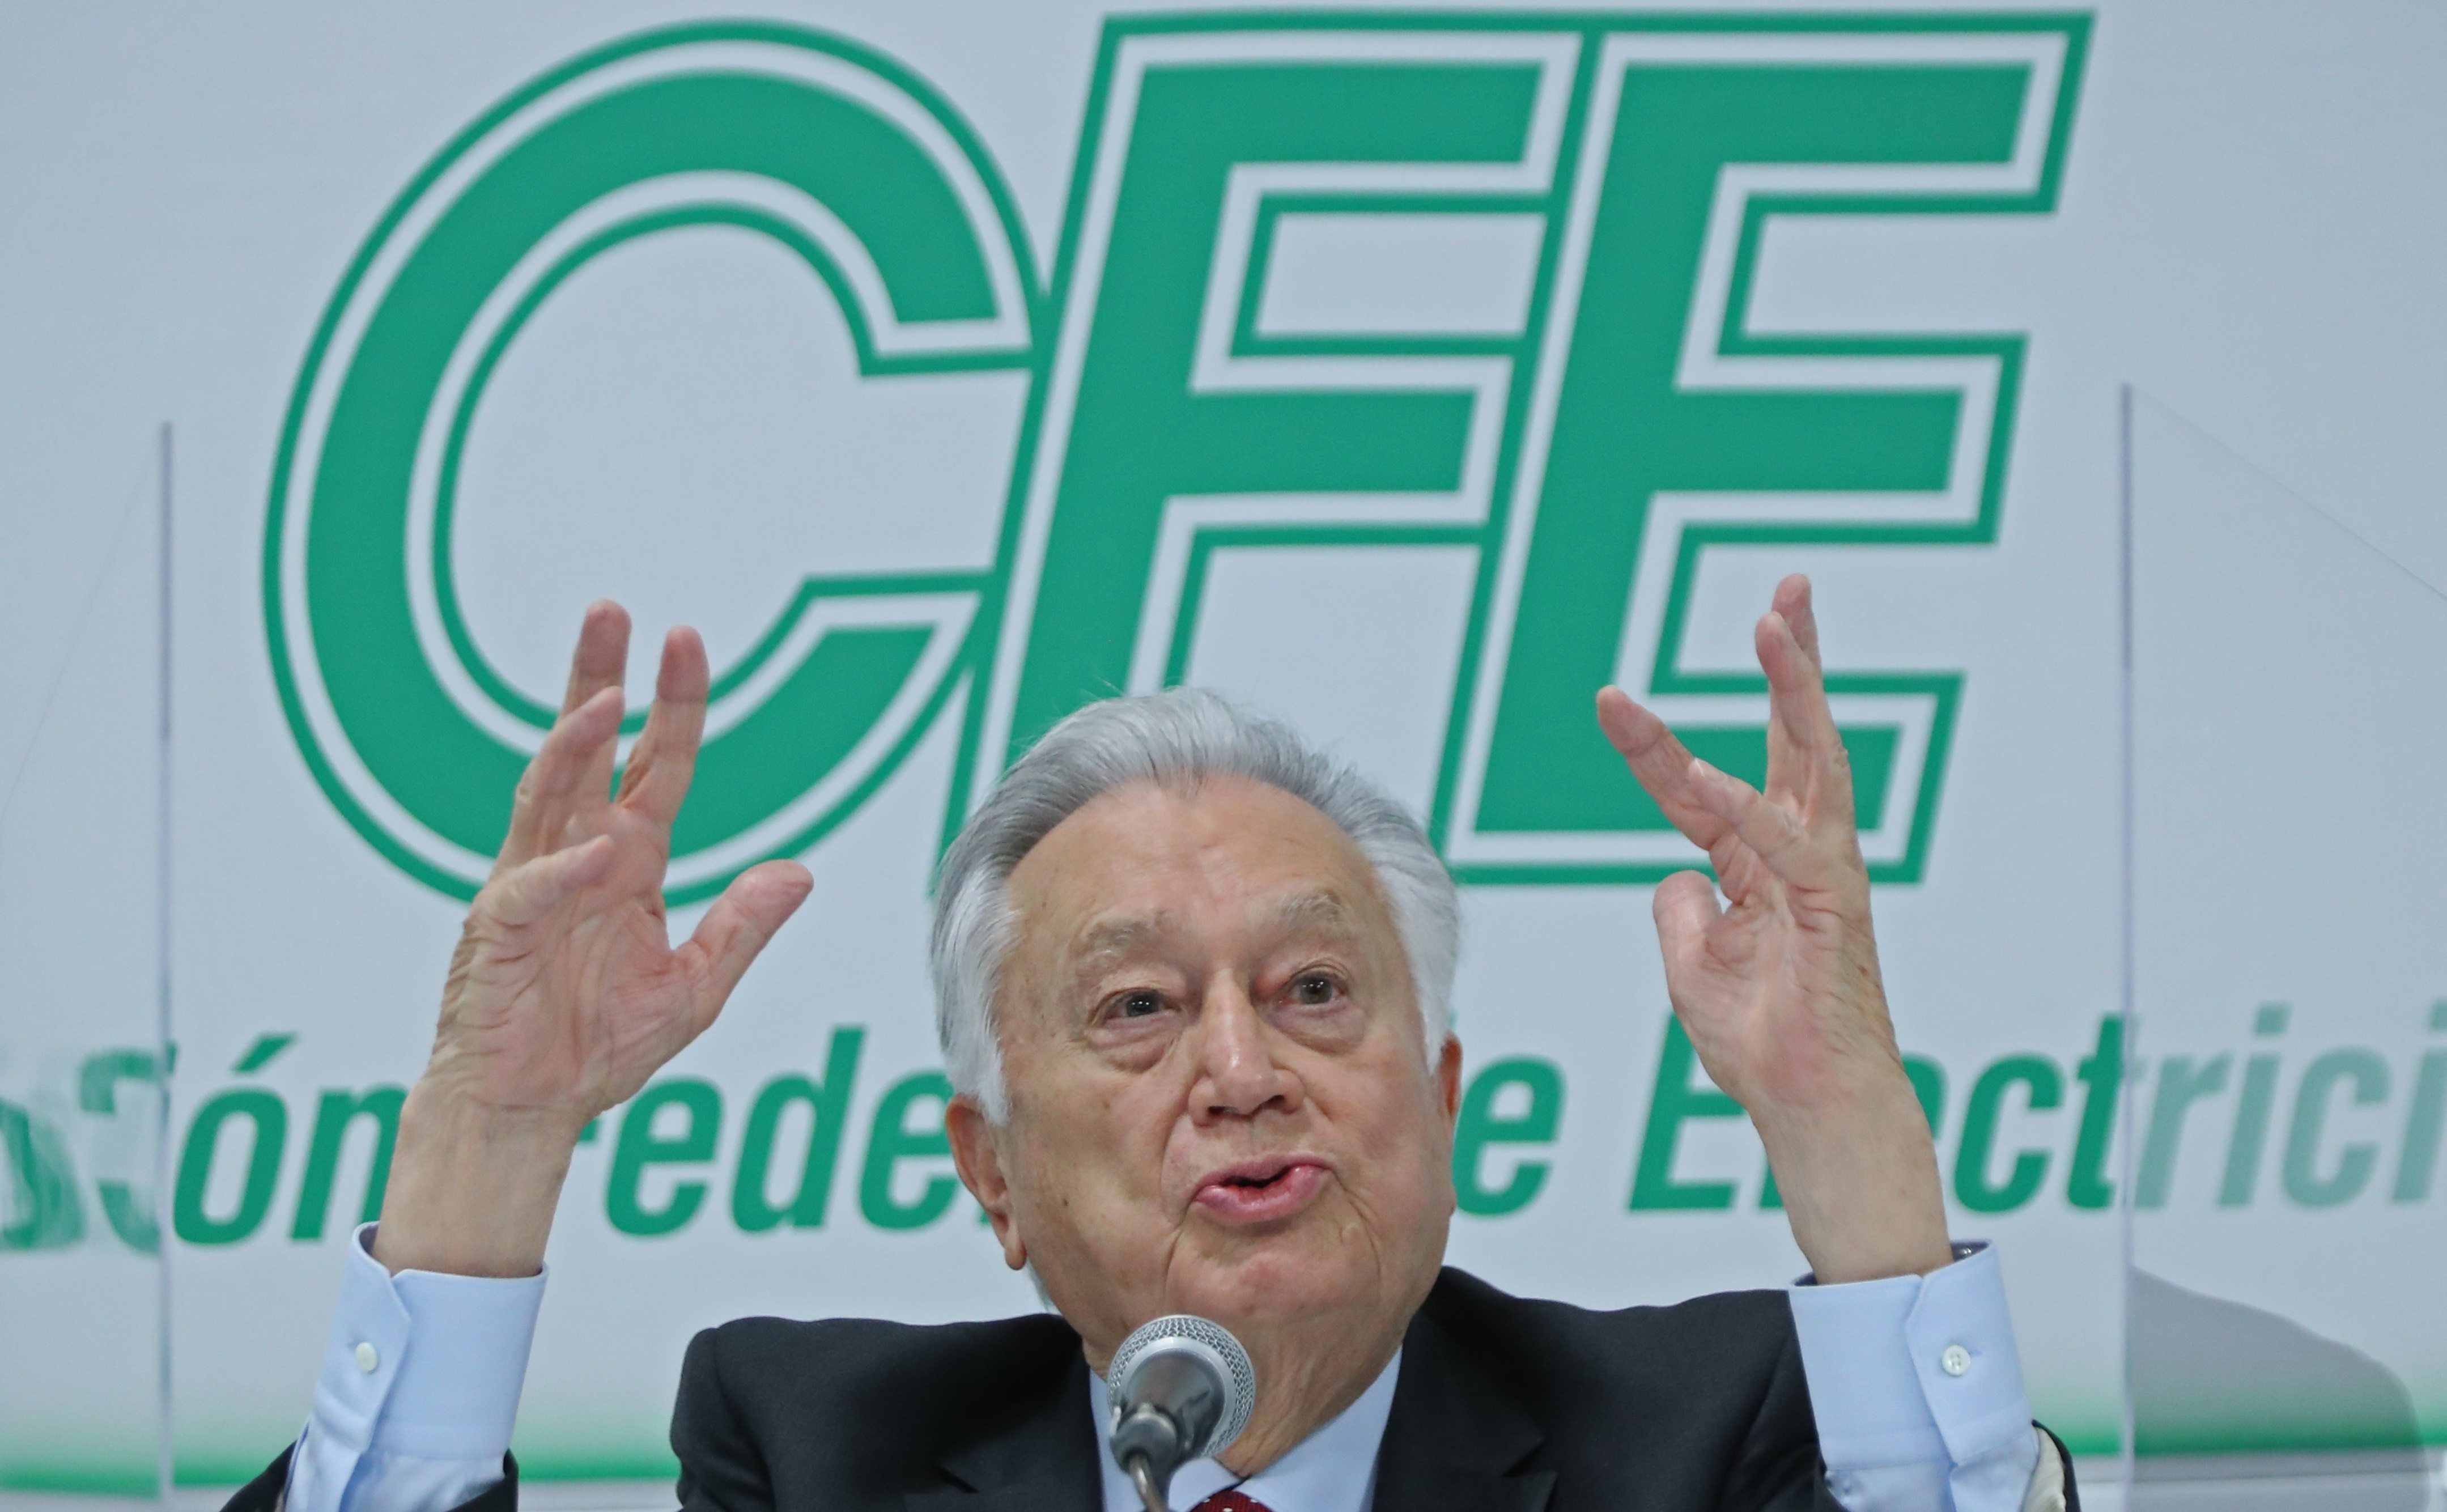 Con la Reforma Eléctrica, la CFE pasará a formar parte del Estado Mexicano (Foto: EFE/Mario Guzmán)
